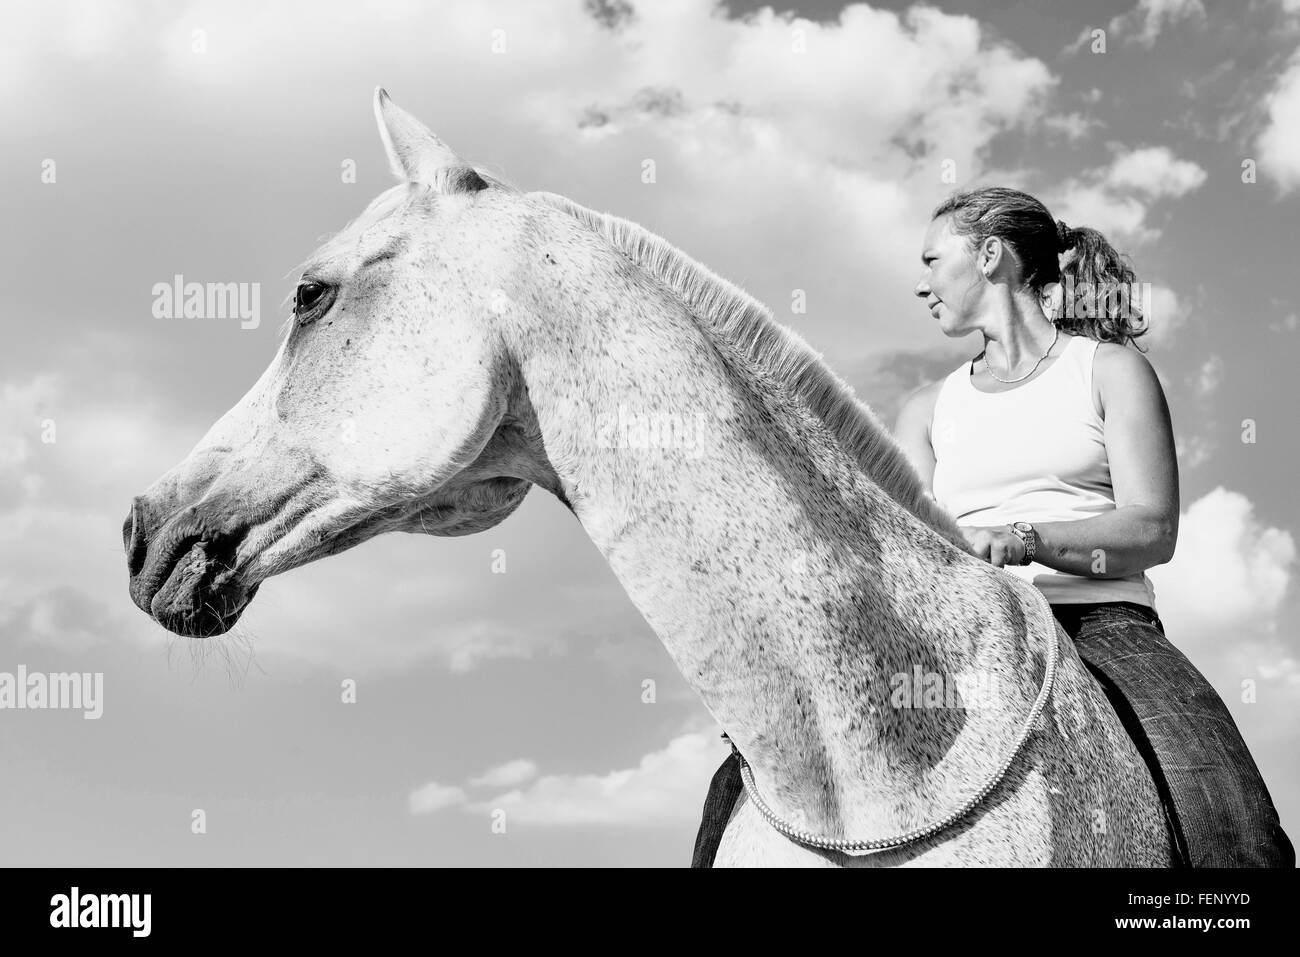 B&W portrait of woman riding gris cheval against sky Banque D'Images